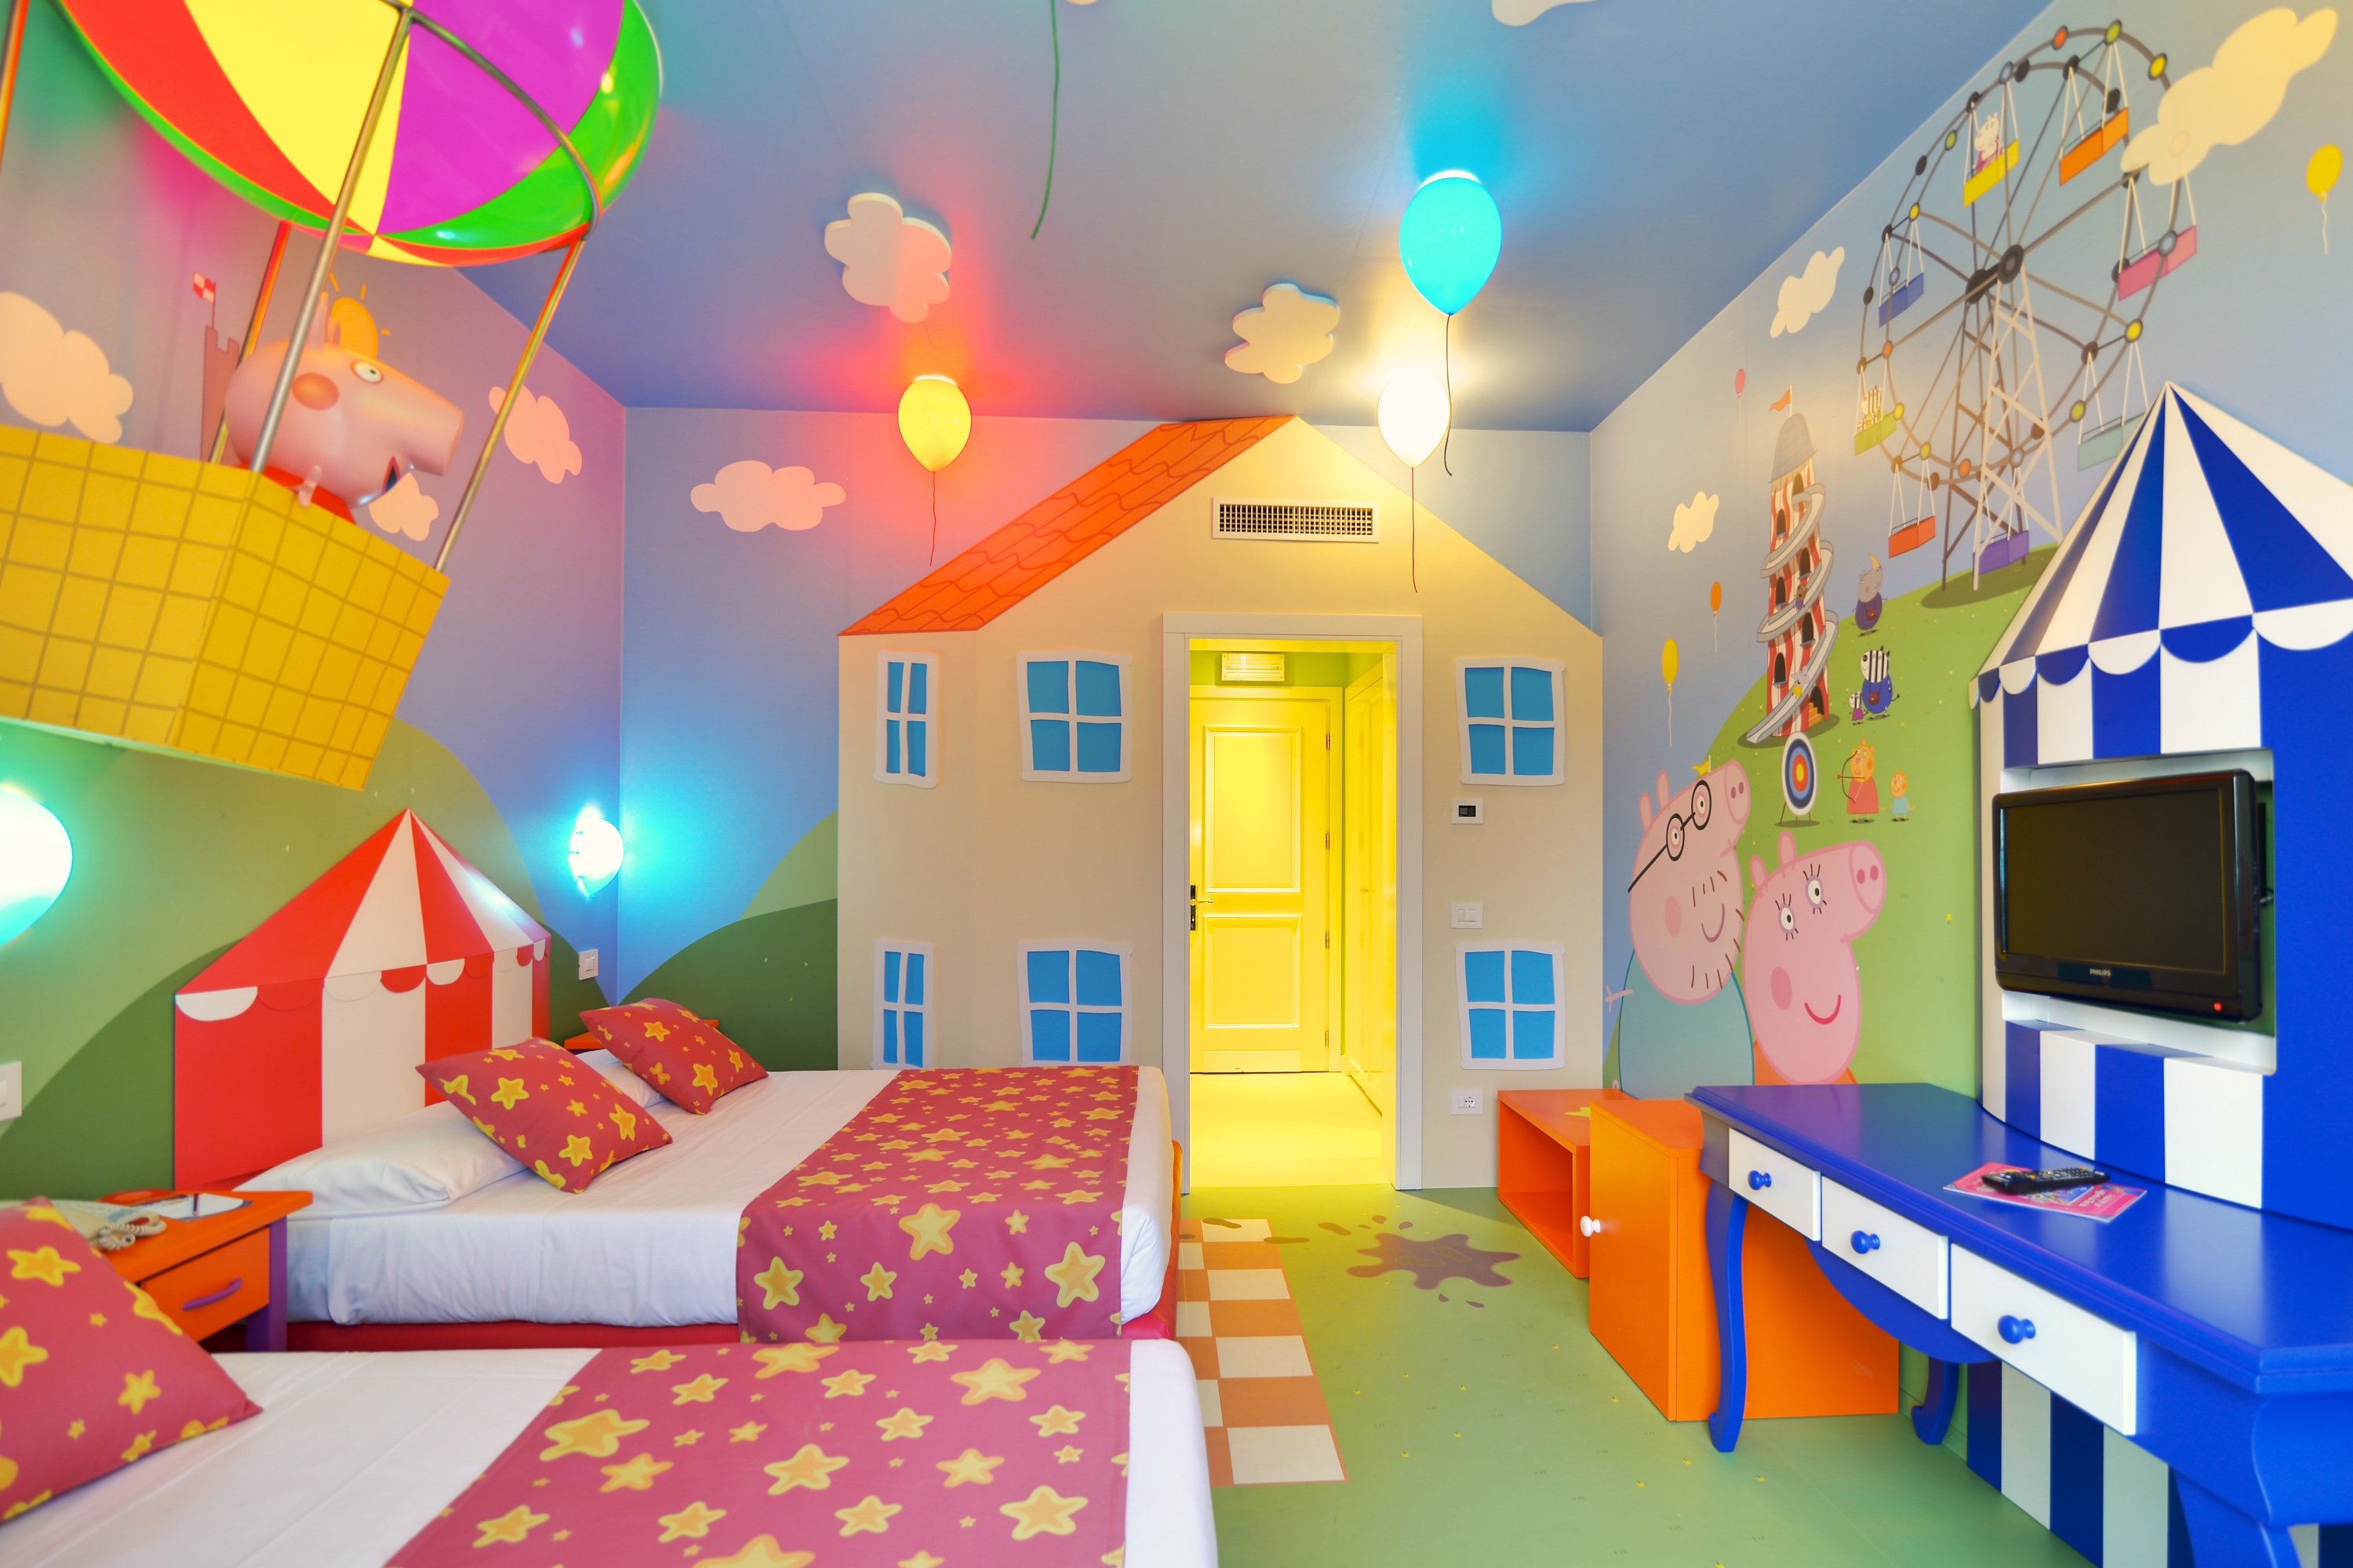 Gardaland Hotel - Peppa Pig Themed Room